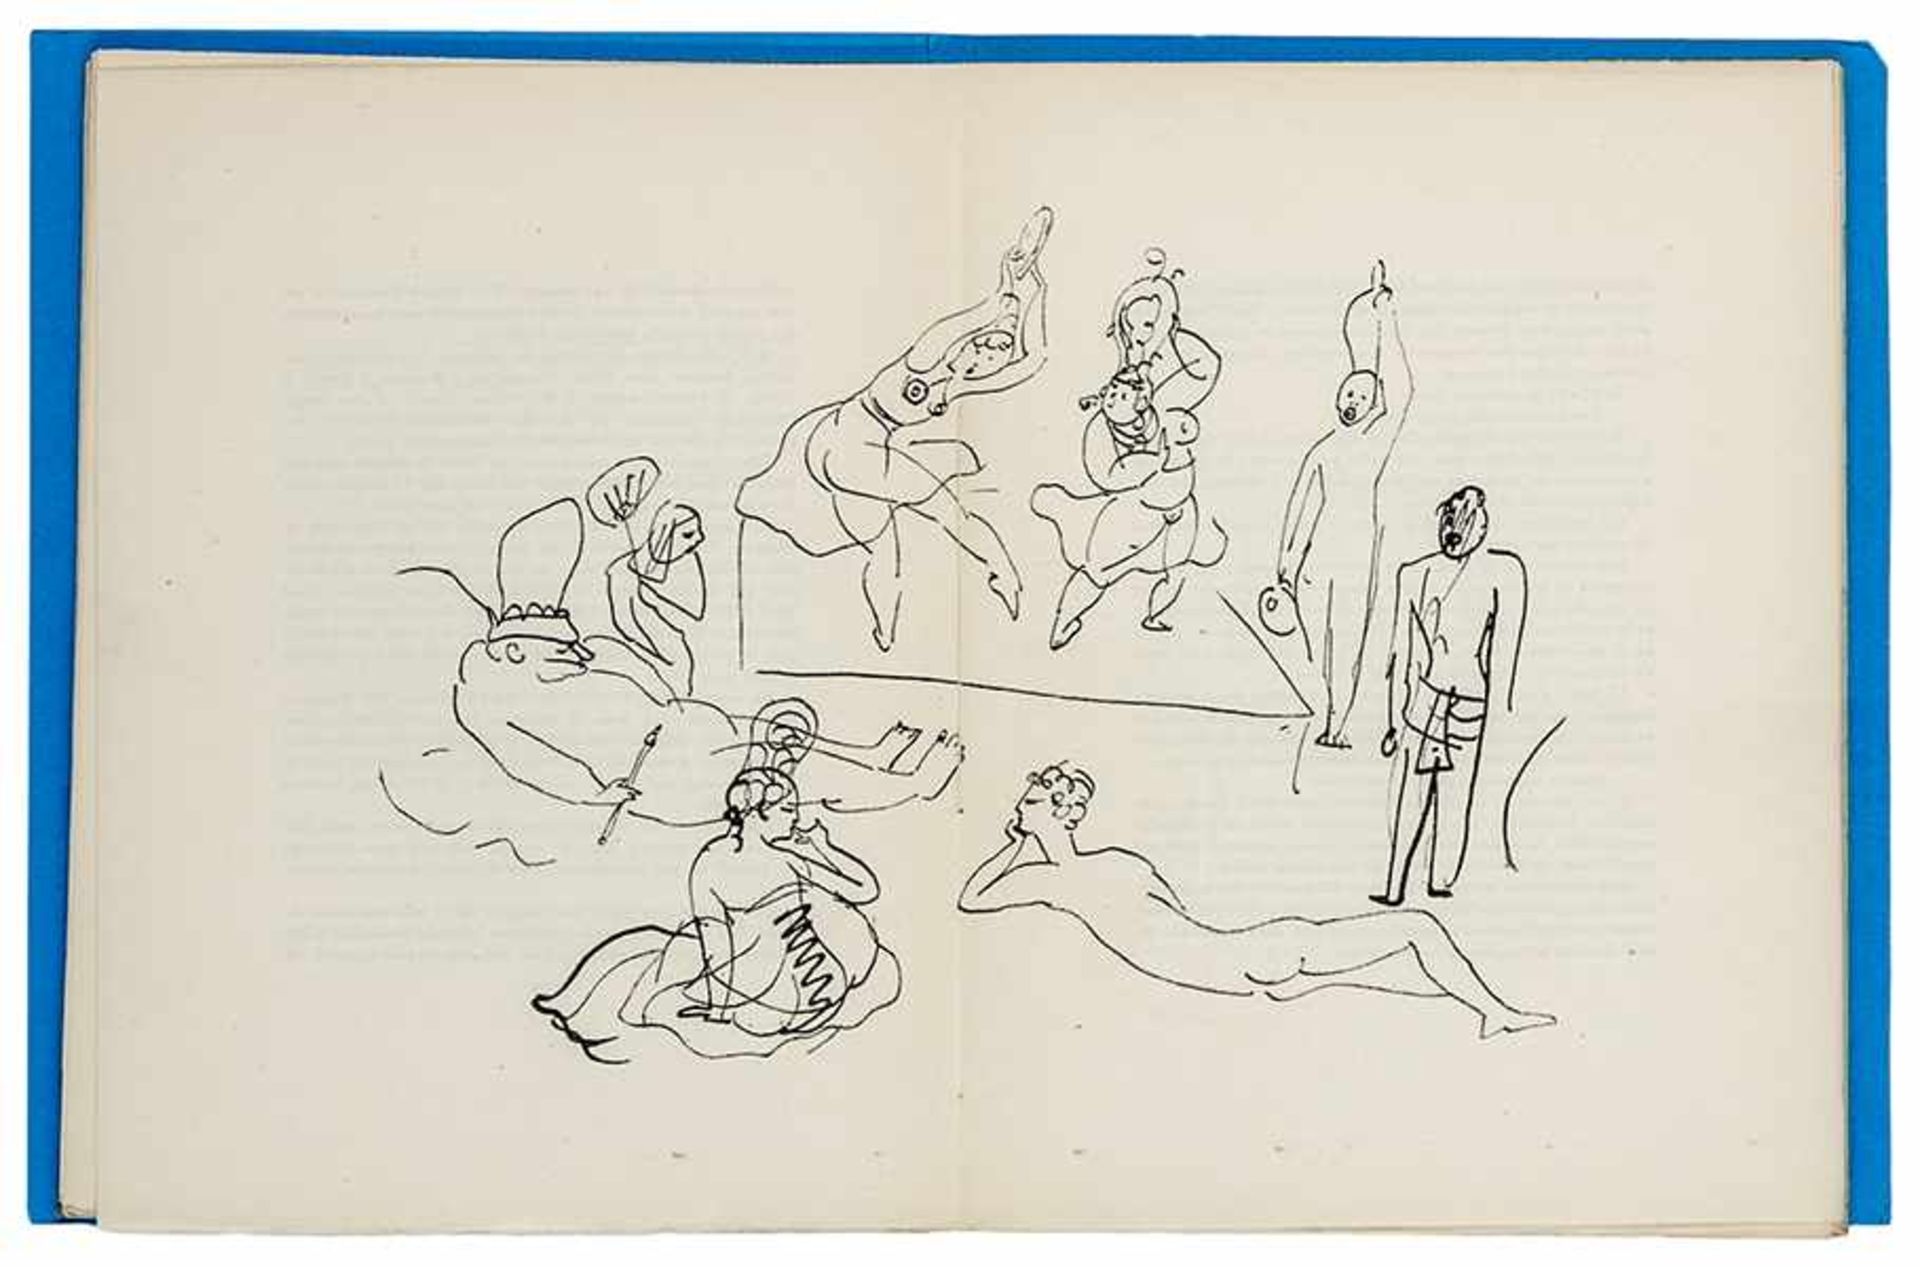 Picasso, Pablo - - Salmon, Andre. Le manuscrit trouvé dans un chapeau. Orné de dessins à la plume